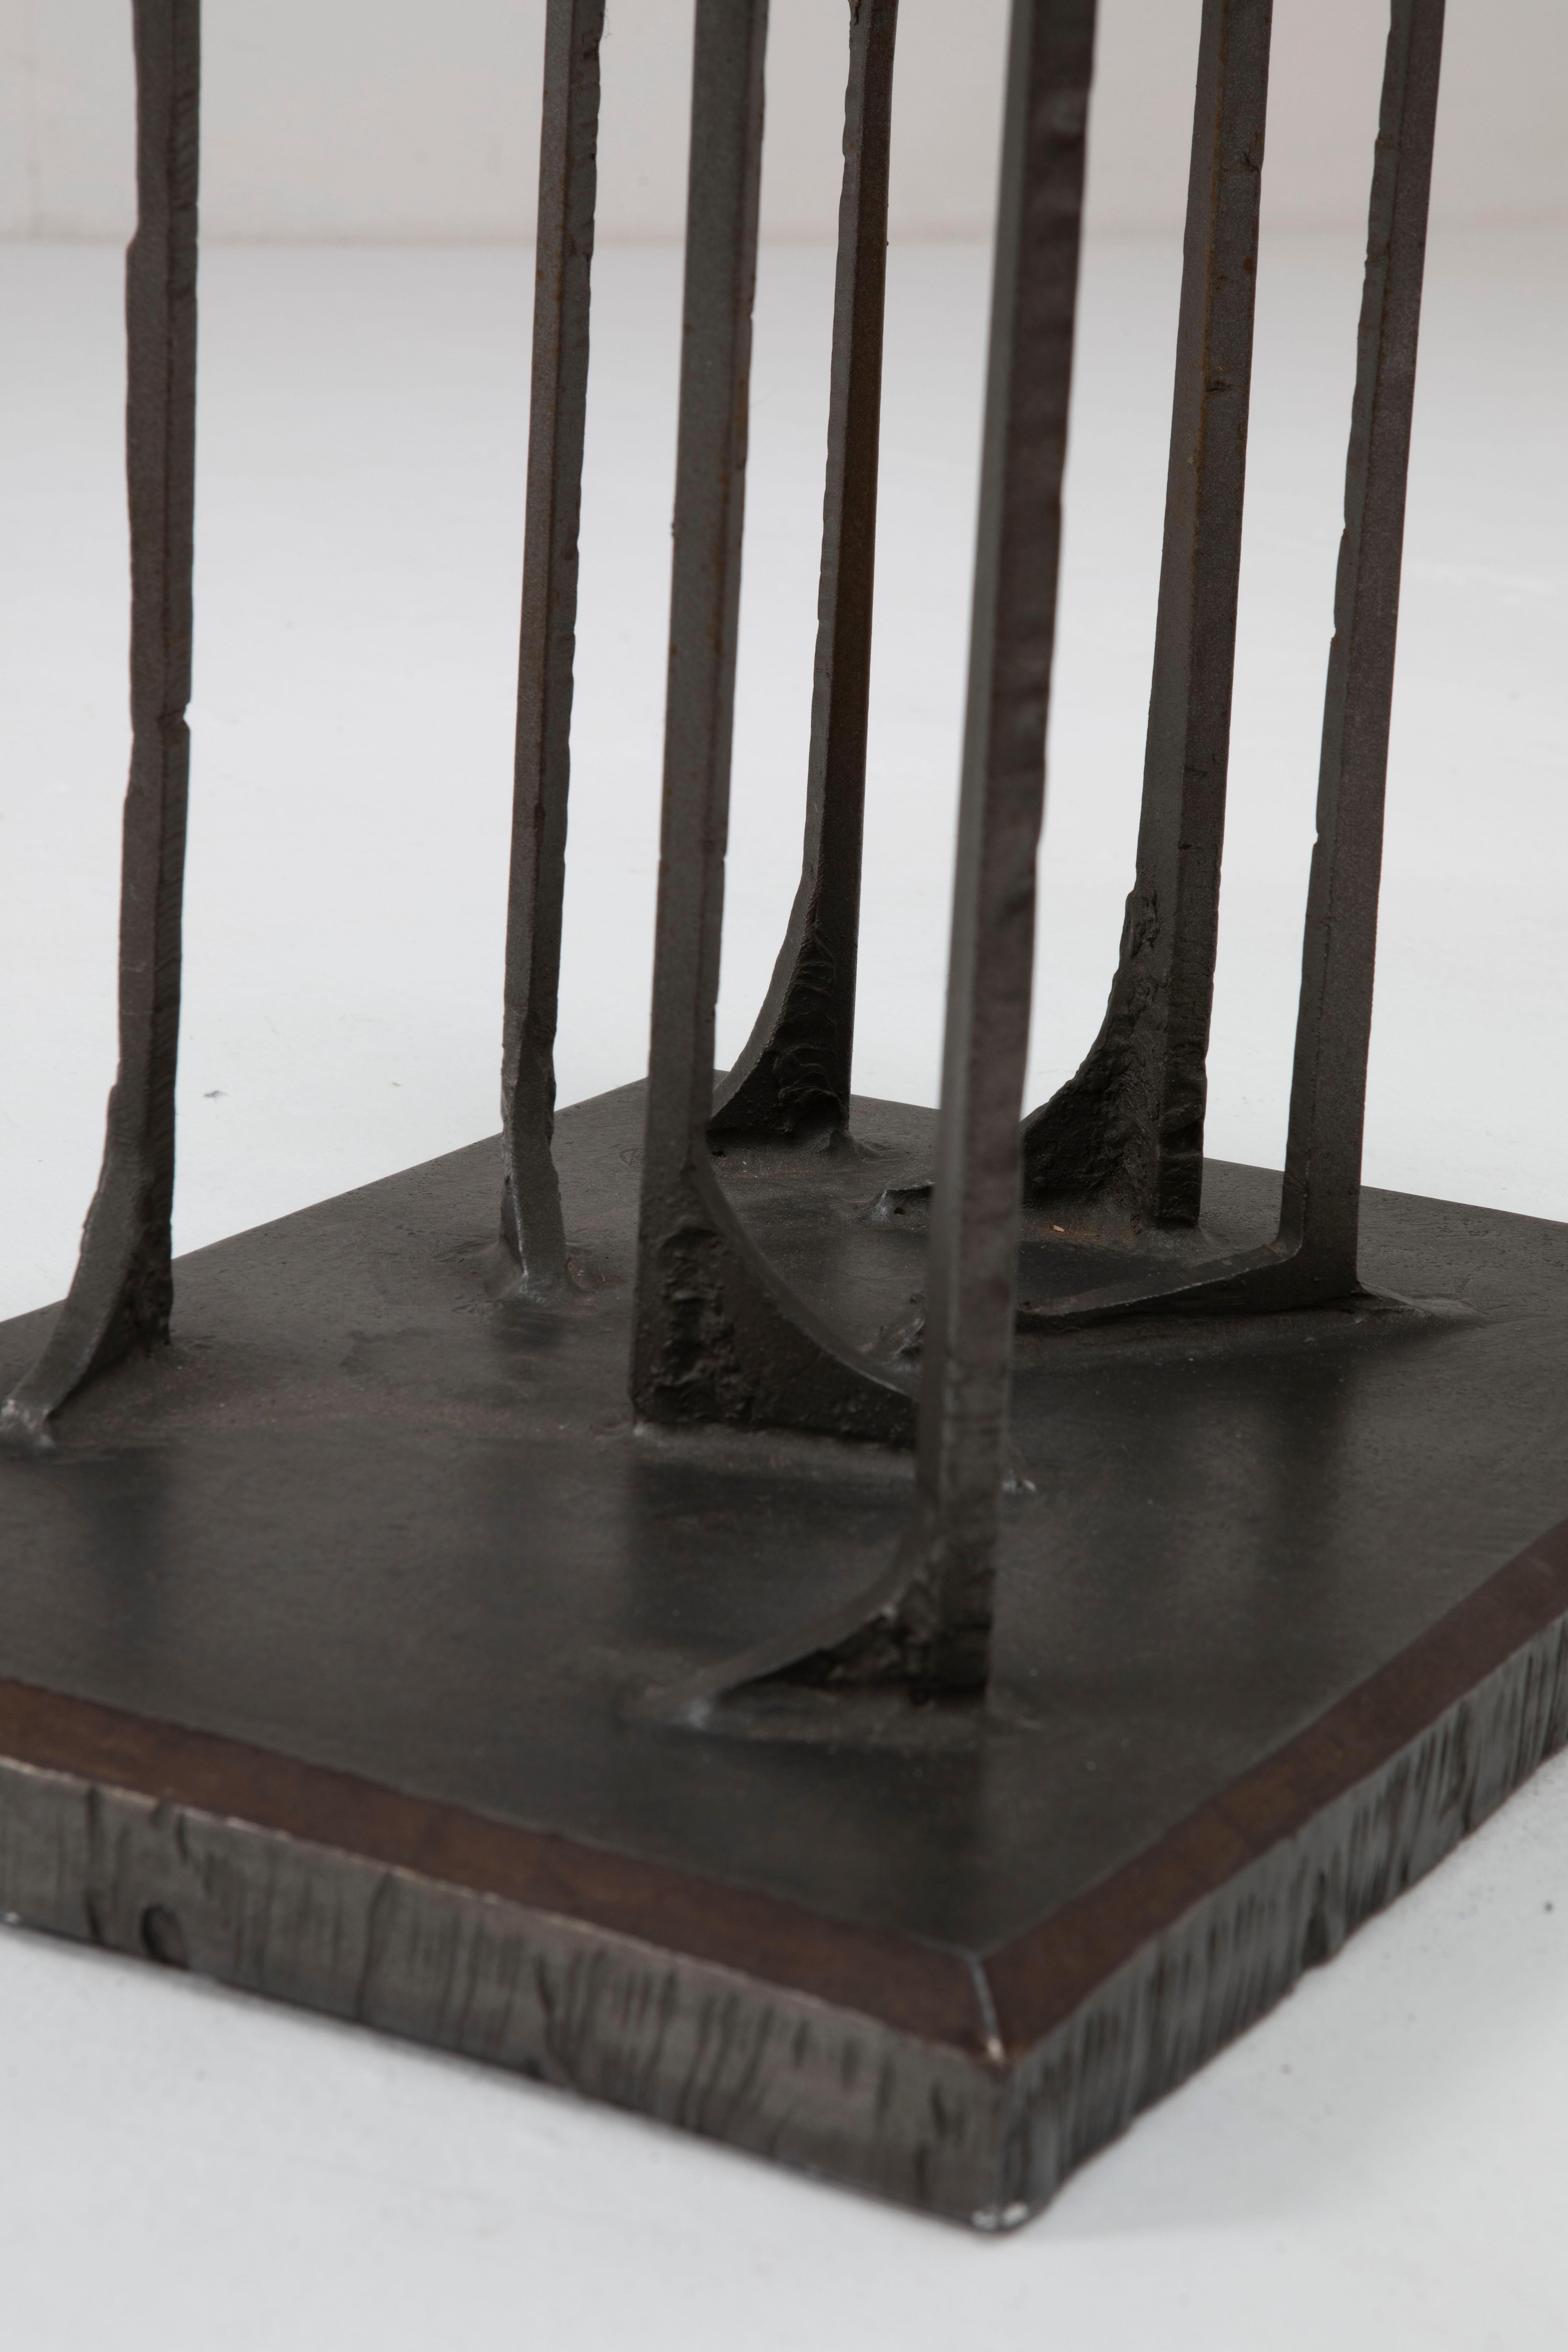 Giovanni Ferrabini stunning Sculptural Bronze Low Table, Italian Design 1950 ca. For Sale 4